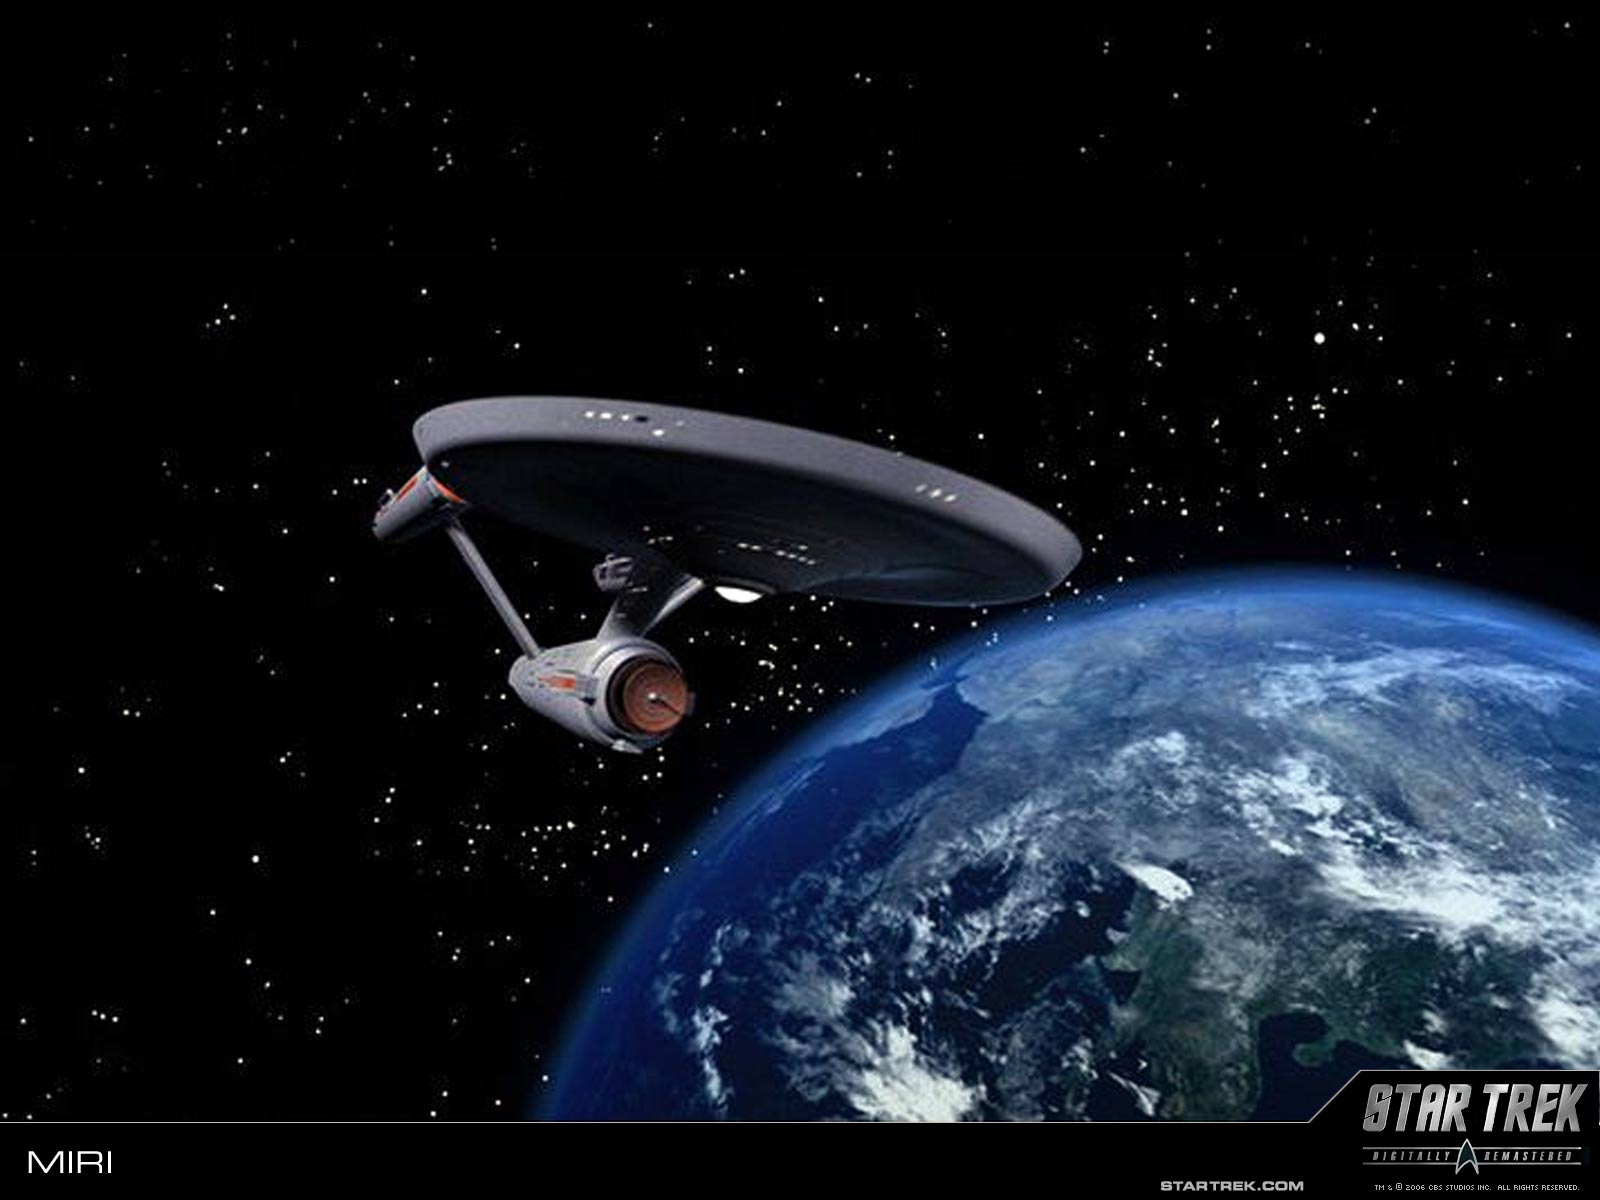 Wallpaper Trekcore Star Trek Original Series Screencaps